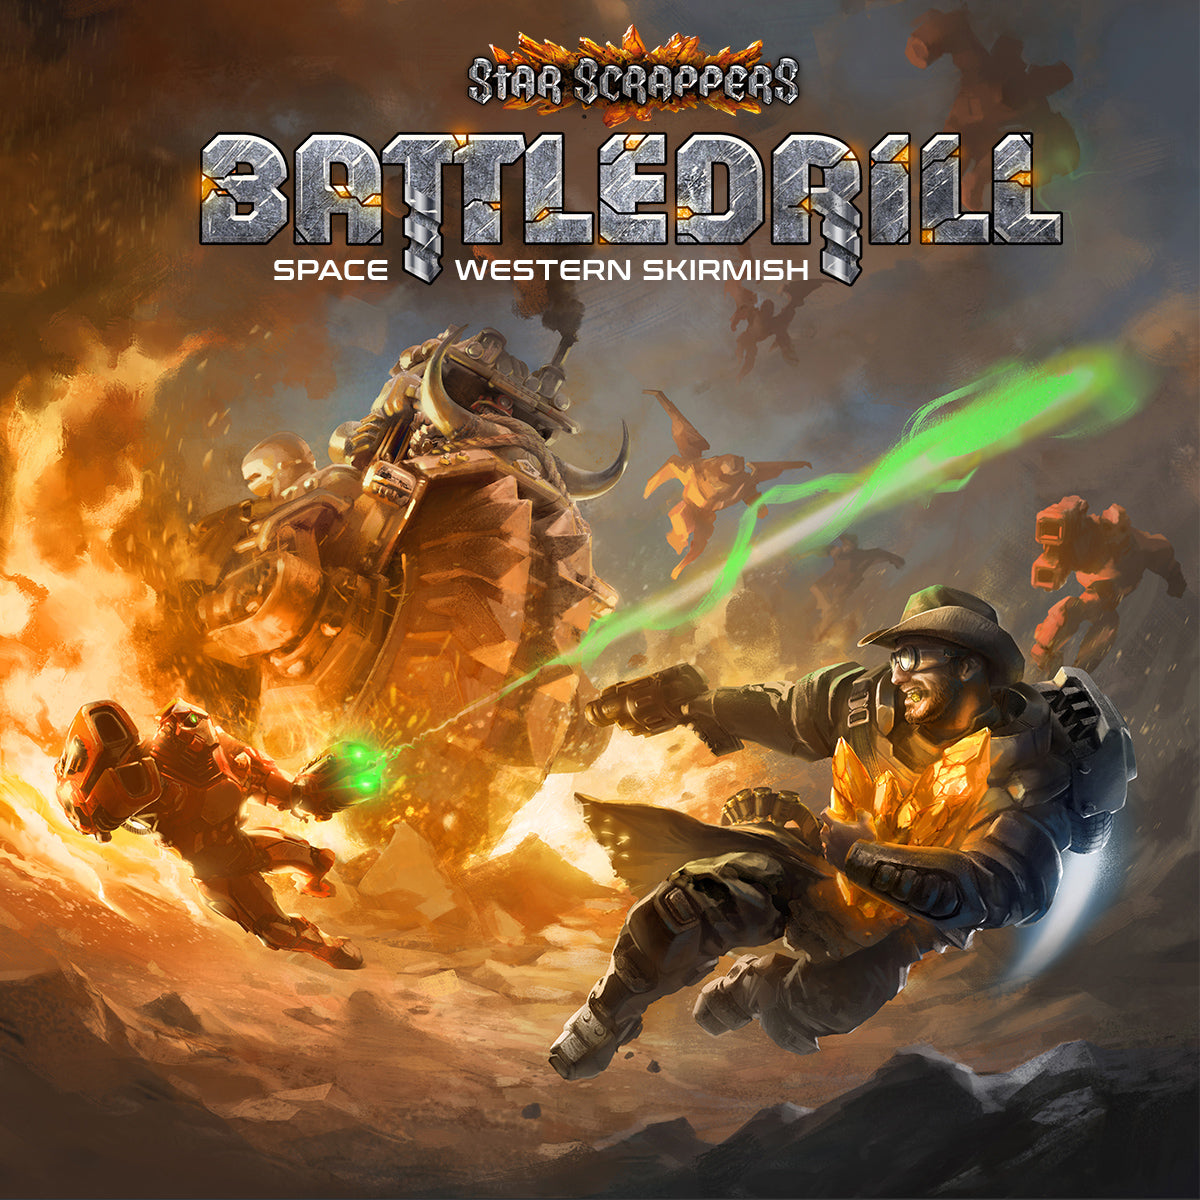 Trax Bioss faction Battledrill Kickstarter board games, RPG painter